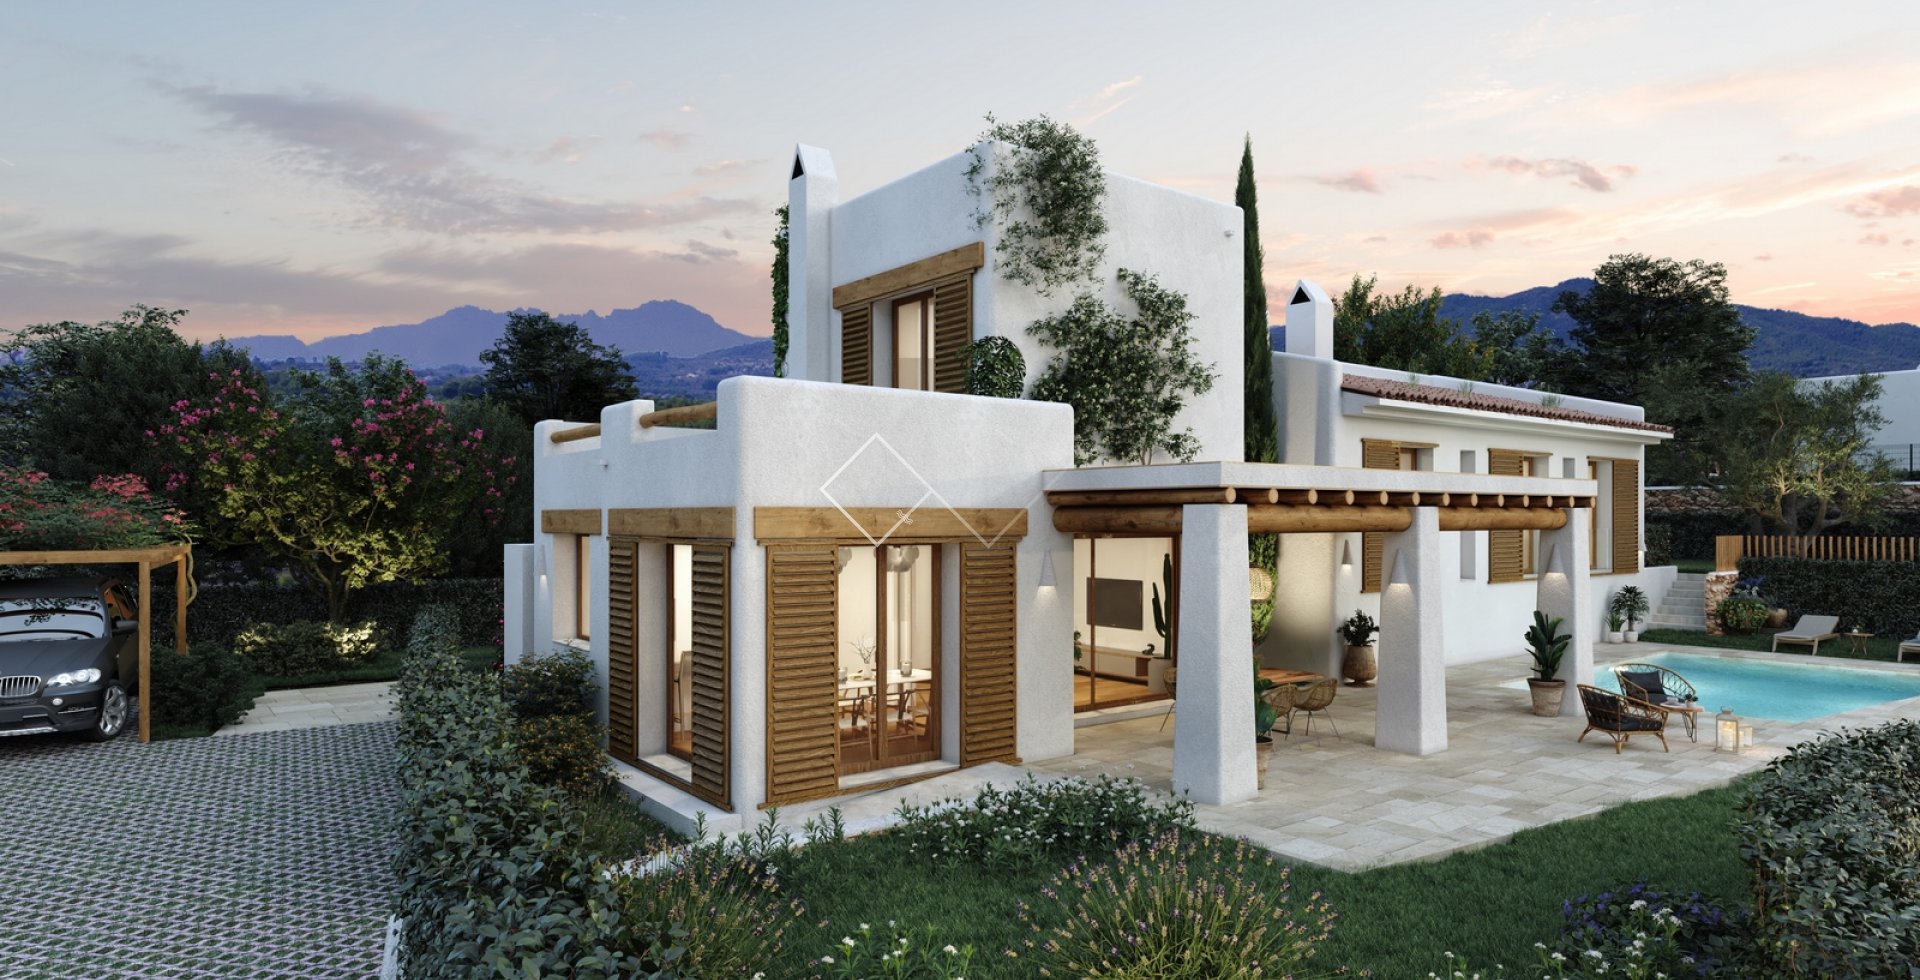 Lomas - Villa de style Ibiza à vendre à Javea avec vue sur le Montgo